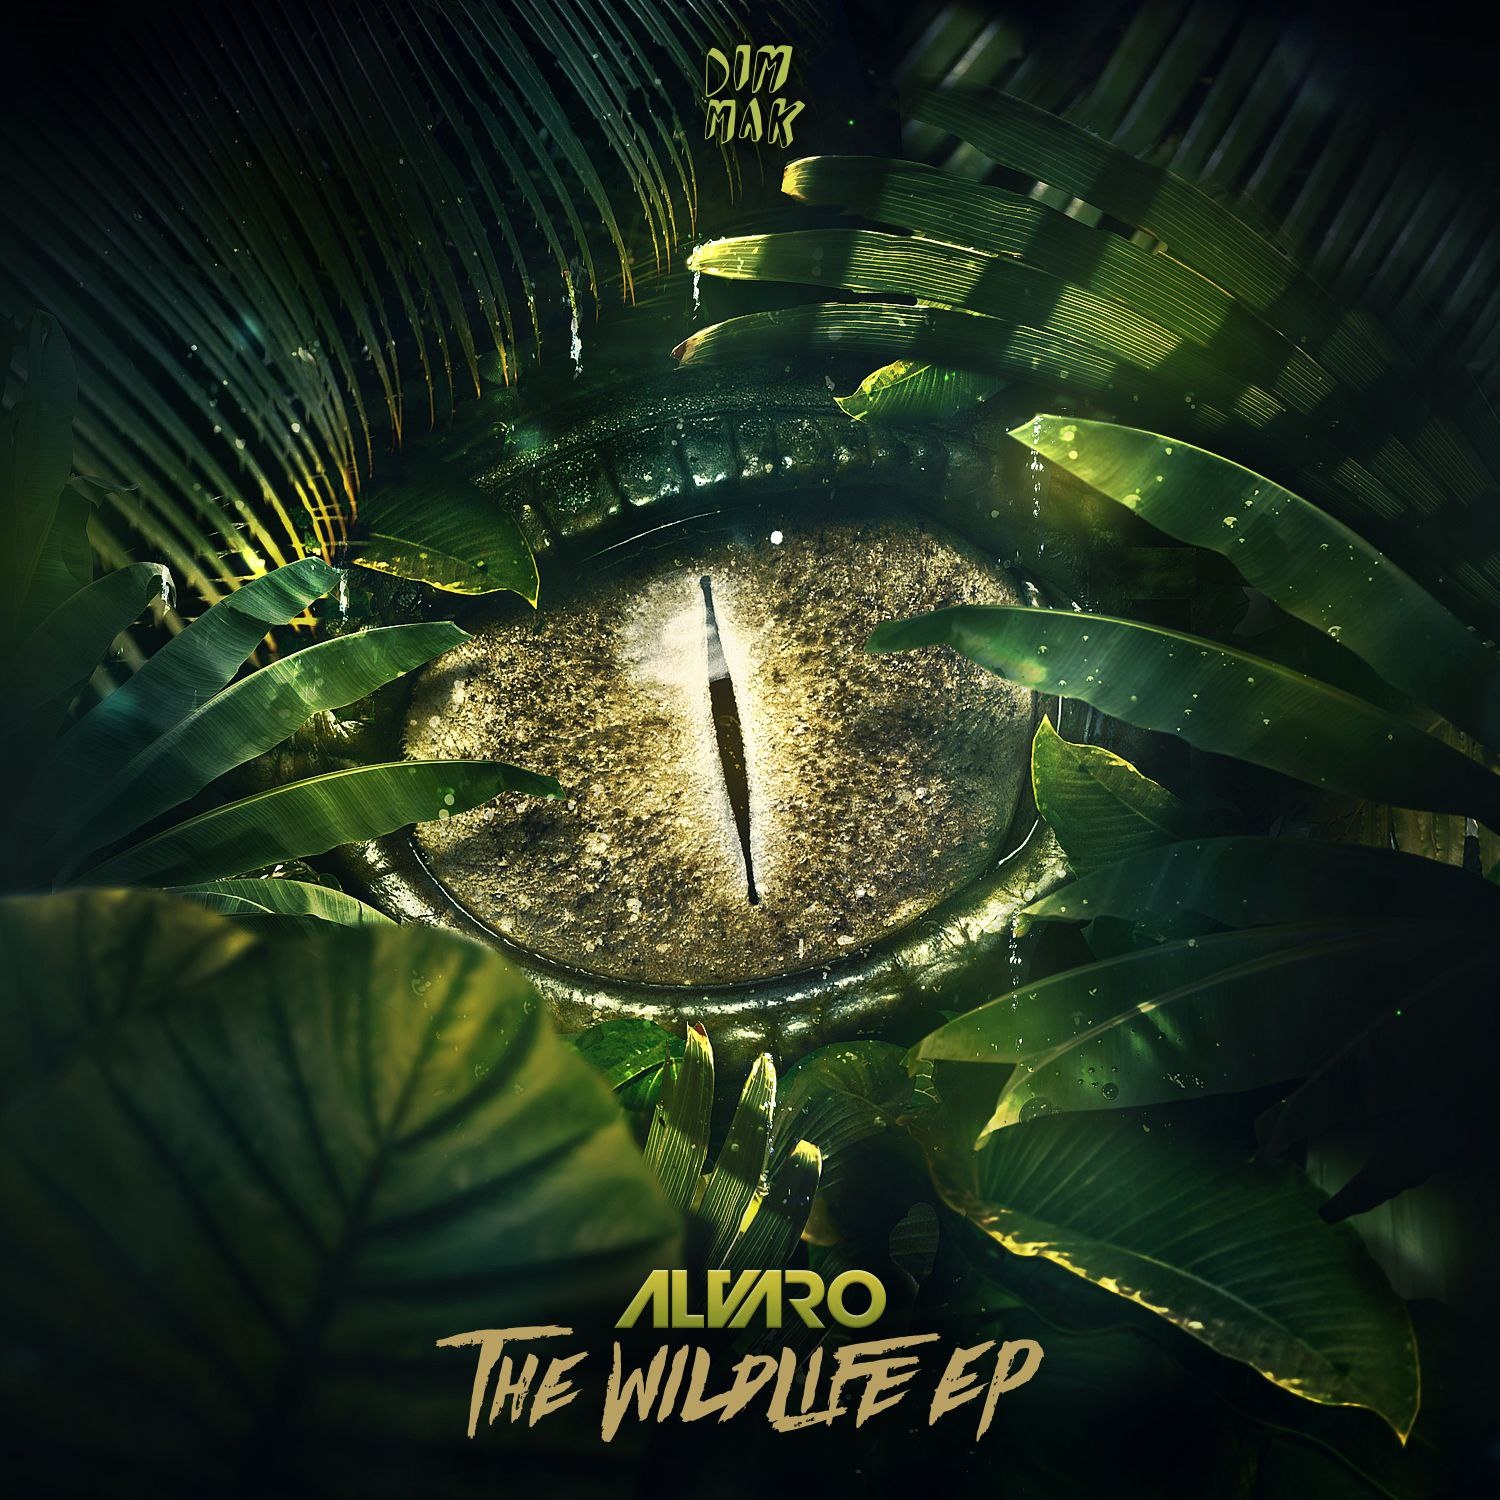 The Wildlife EP